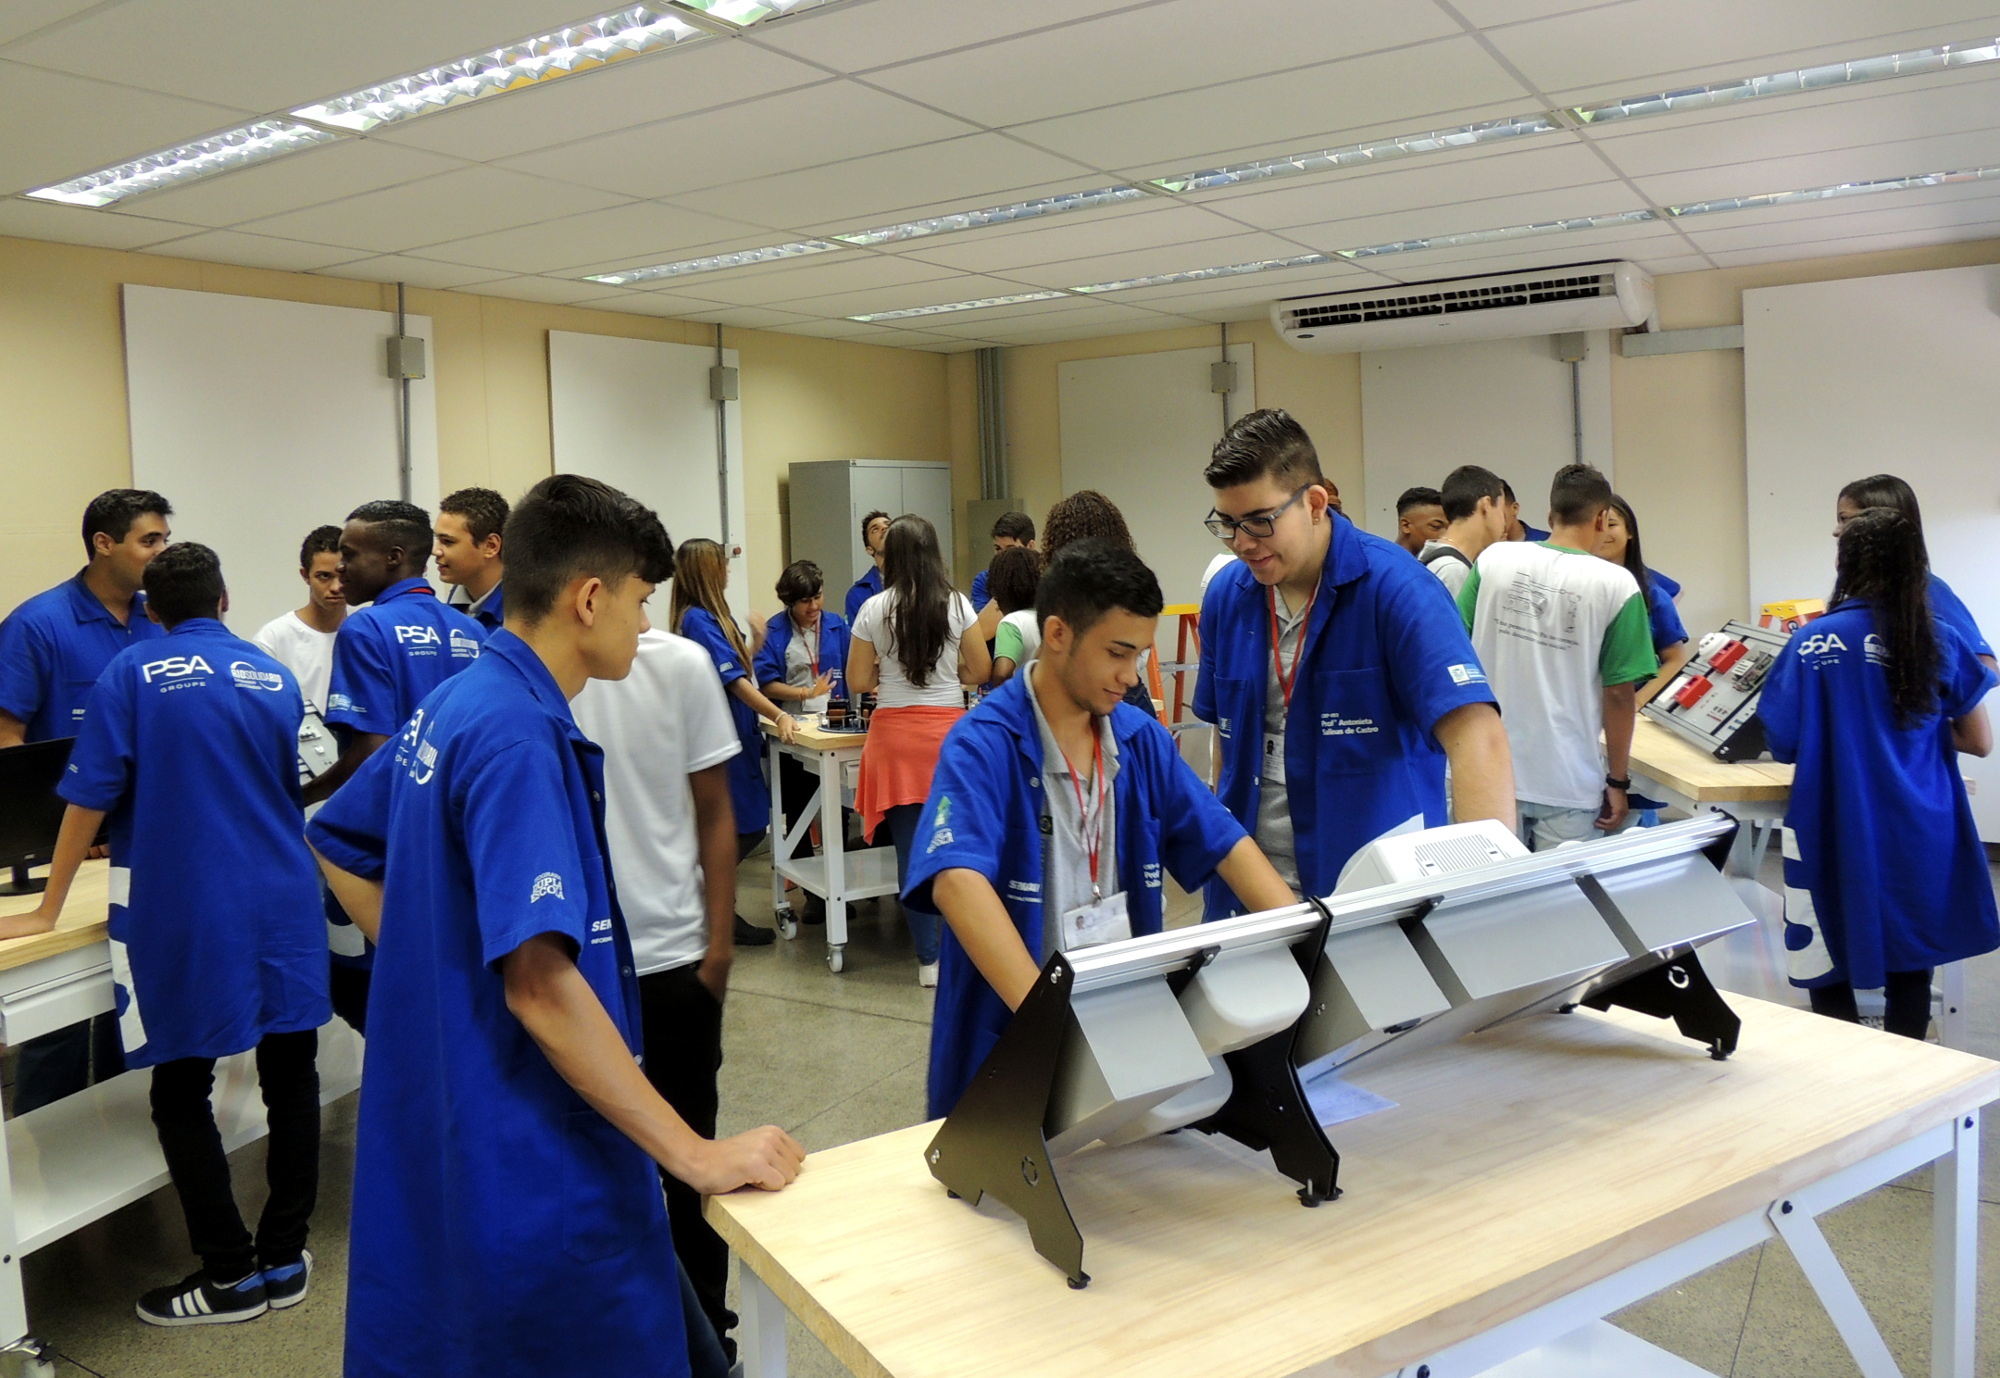 Estudantes que ingressaram no ensino médio conheceram as instalações e o projeto didático do curso técnico em eletrotécnica